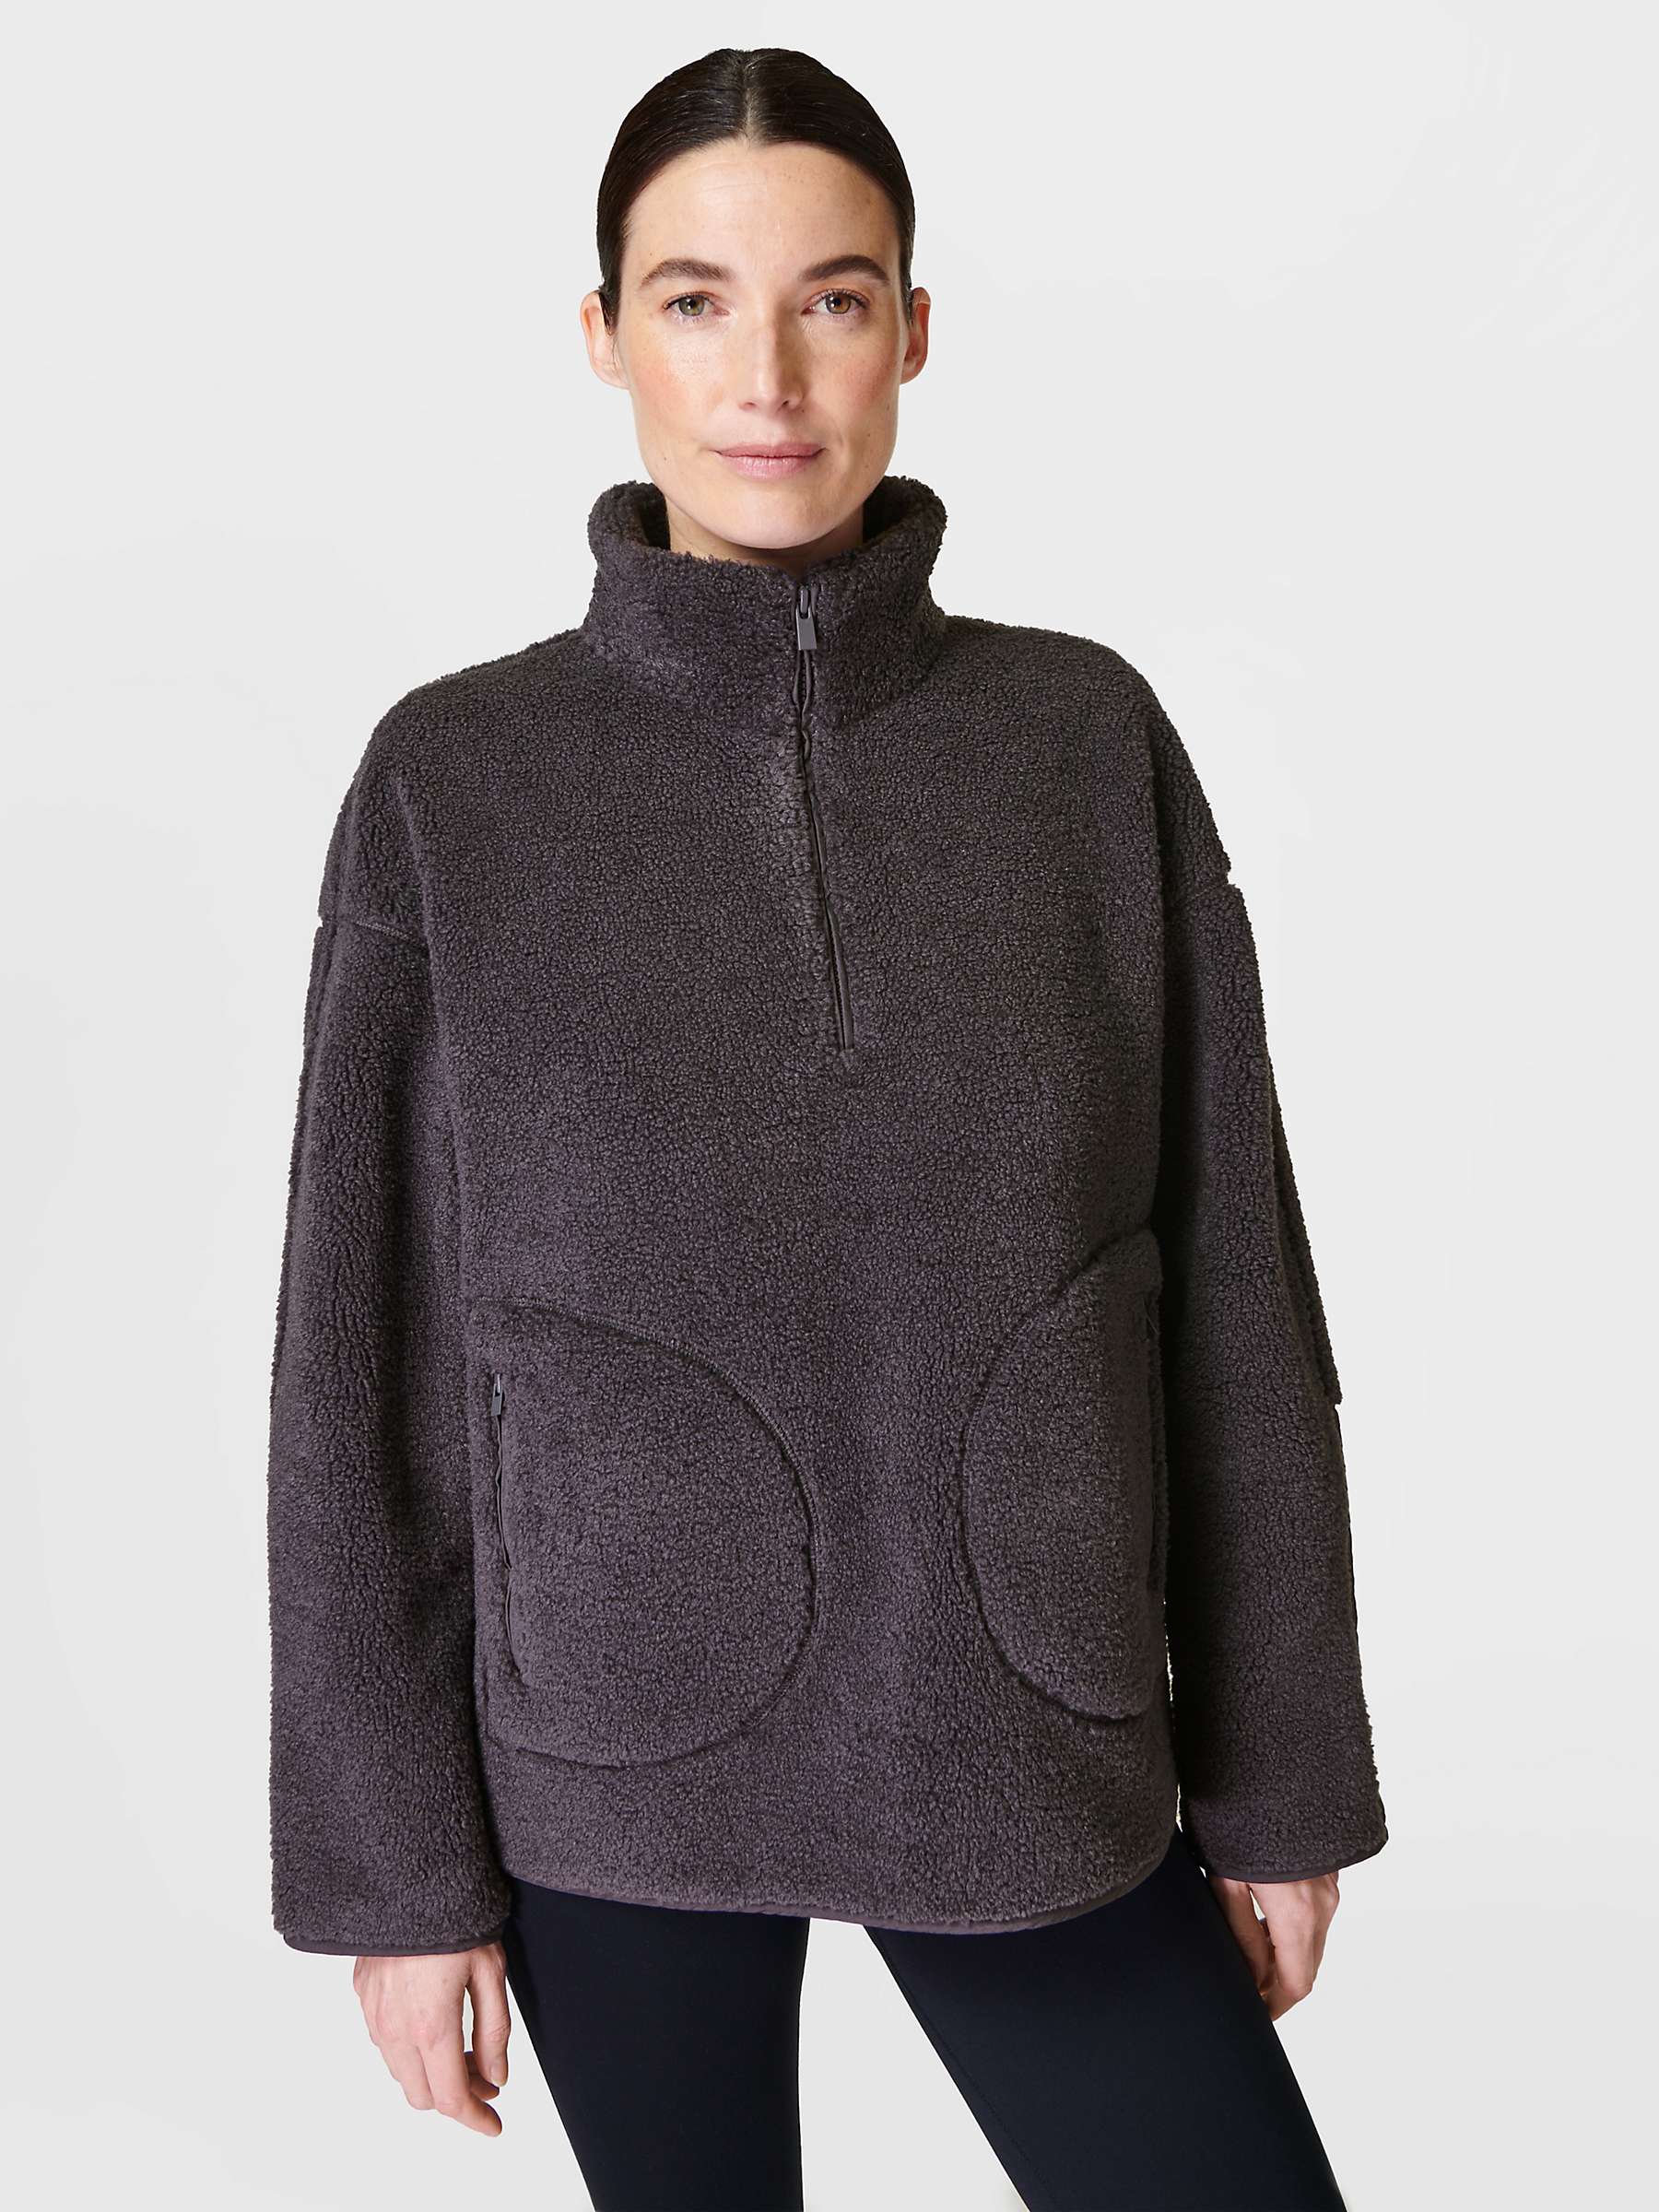 Buy Sweaty Betty Plush Textured Fleece Half Zip Jumper Online at johnlewis.com